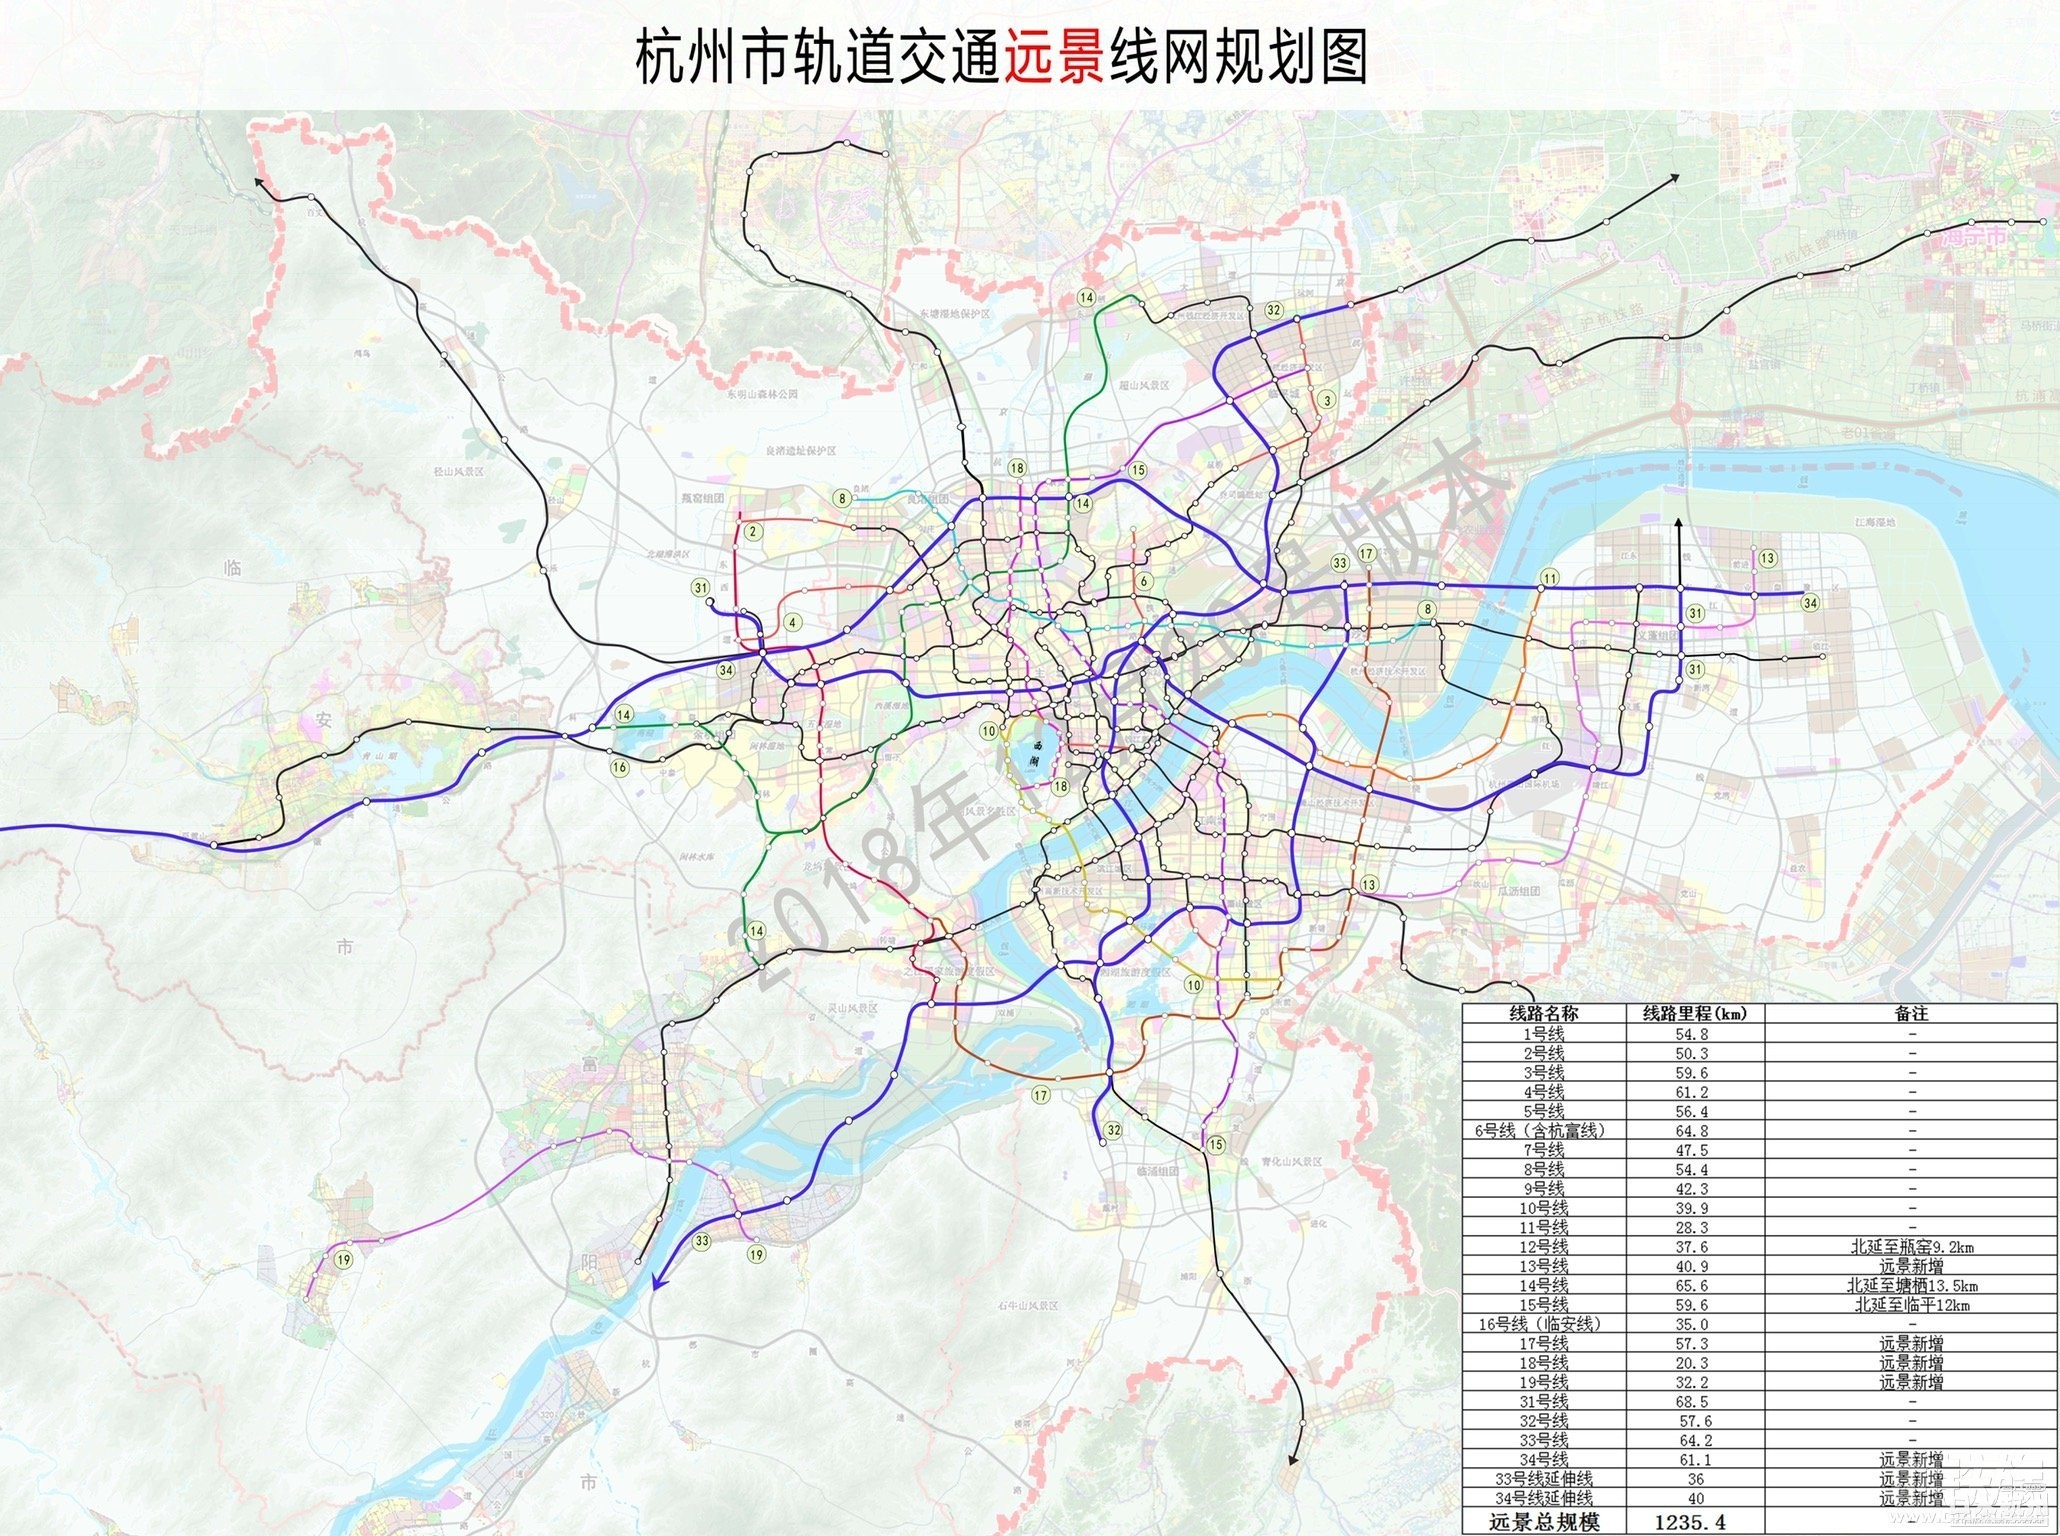 杭州是否应该研究地铁四期甚至终极规划线路?